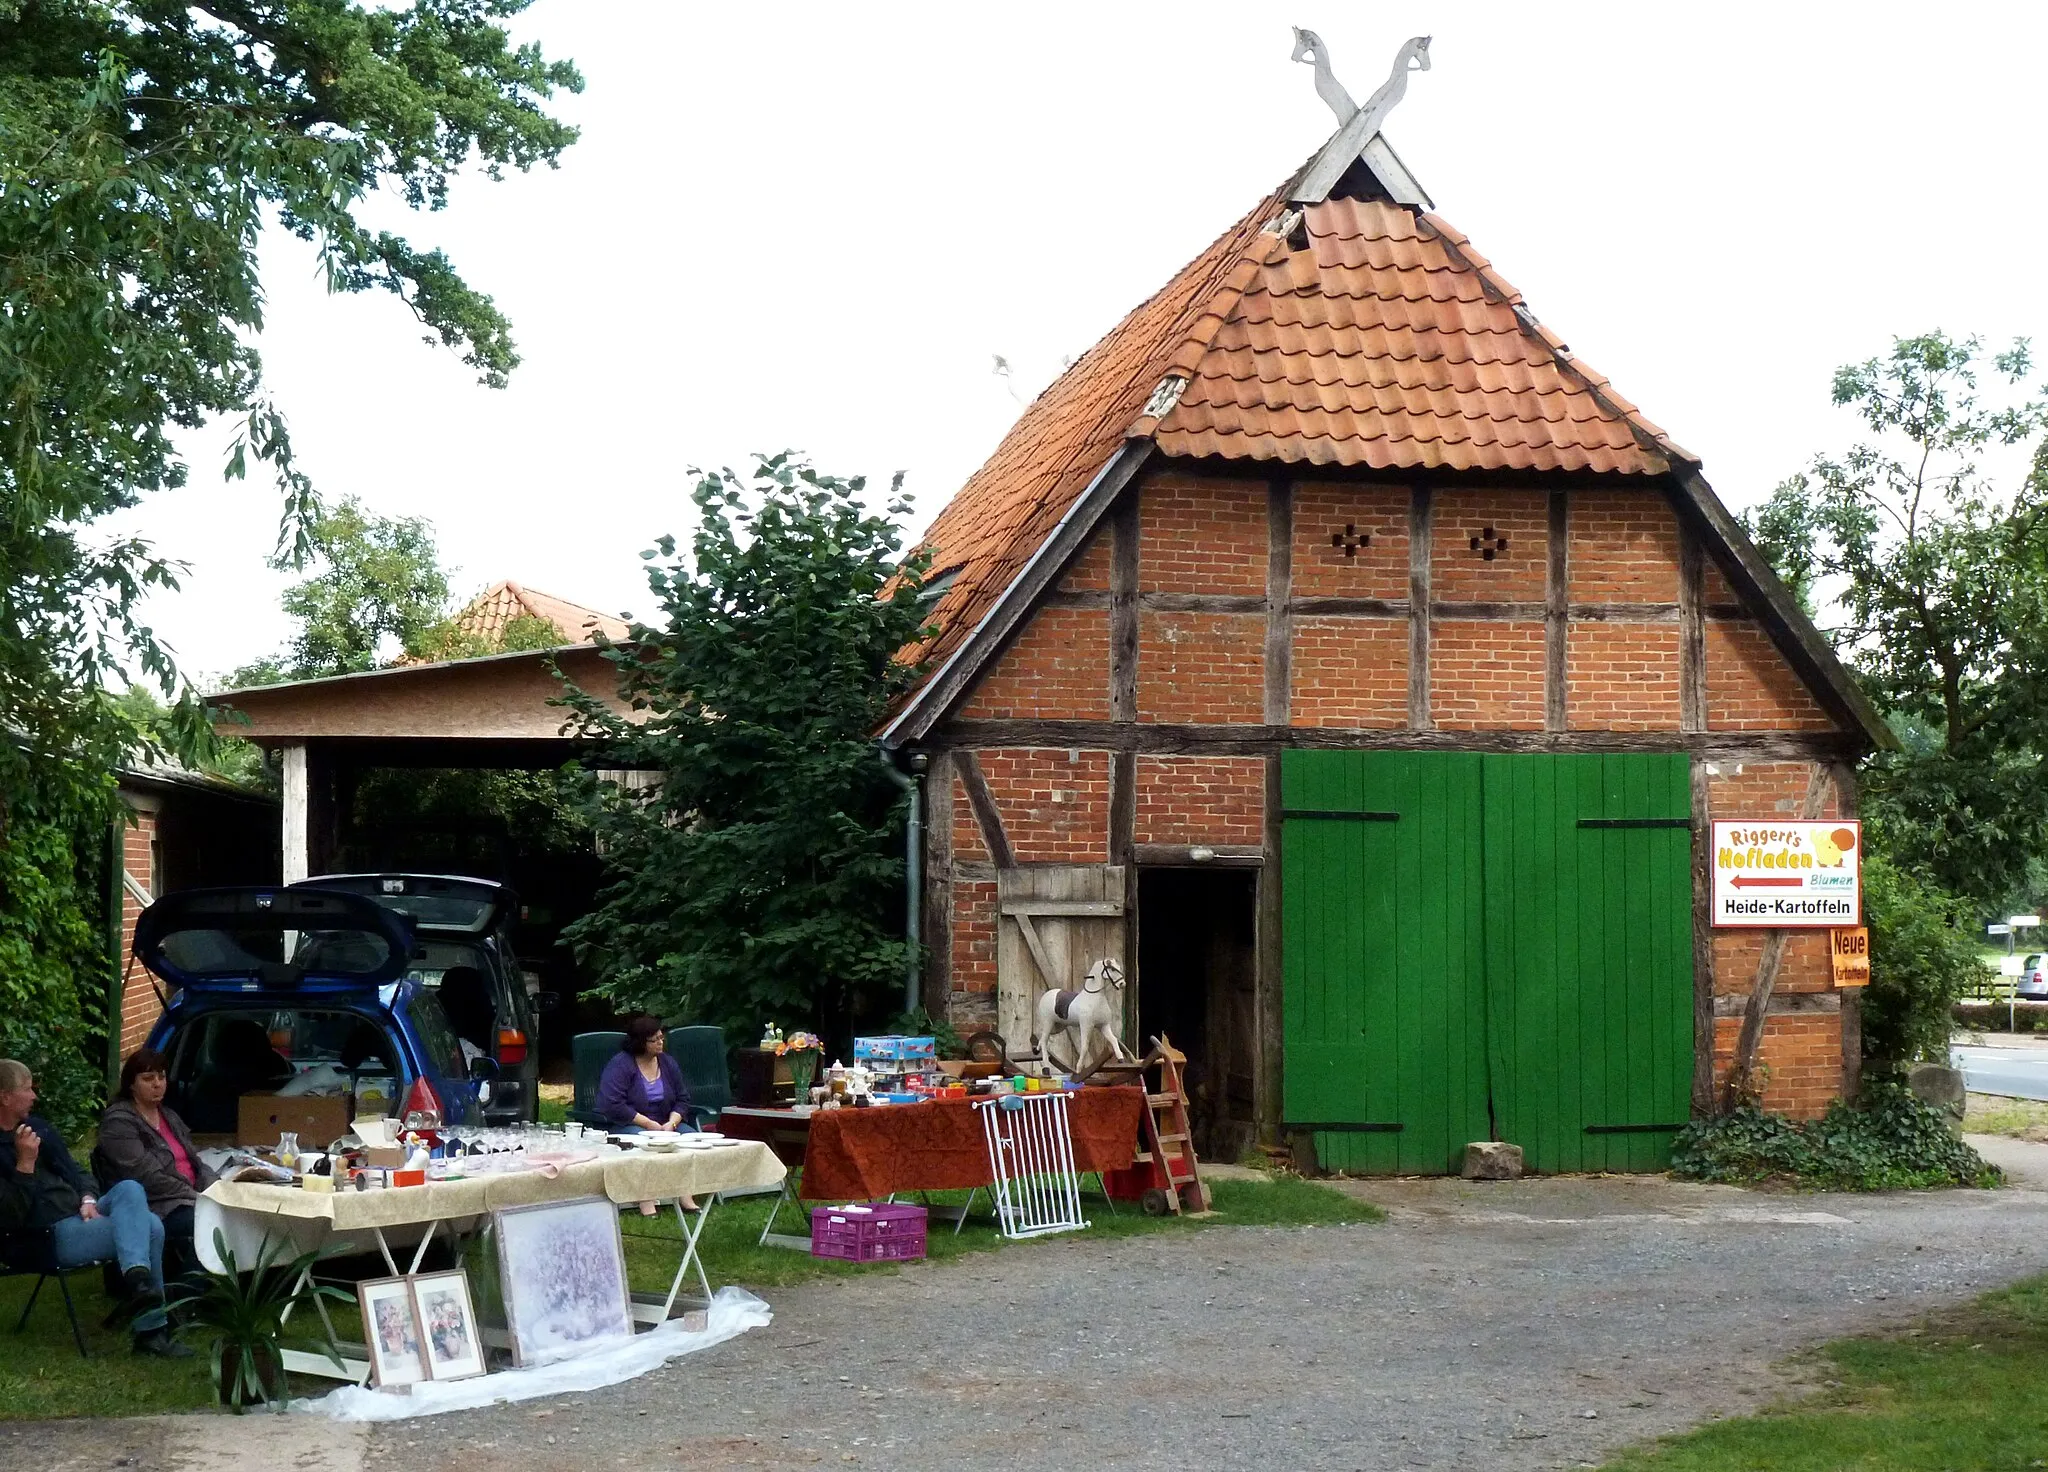 Photo showing: Flohmarkt auf dem Bauernhof der Familie Riggert in Eimke, Niedersachsen, DE. Stall- und Scheunengebäude im Fachwerkstil.